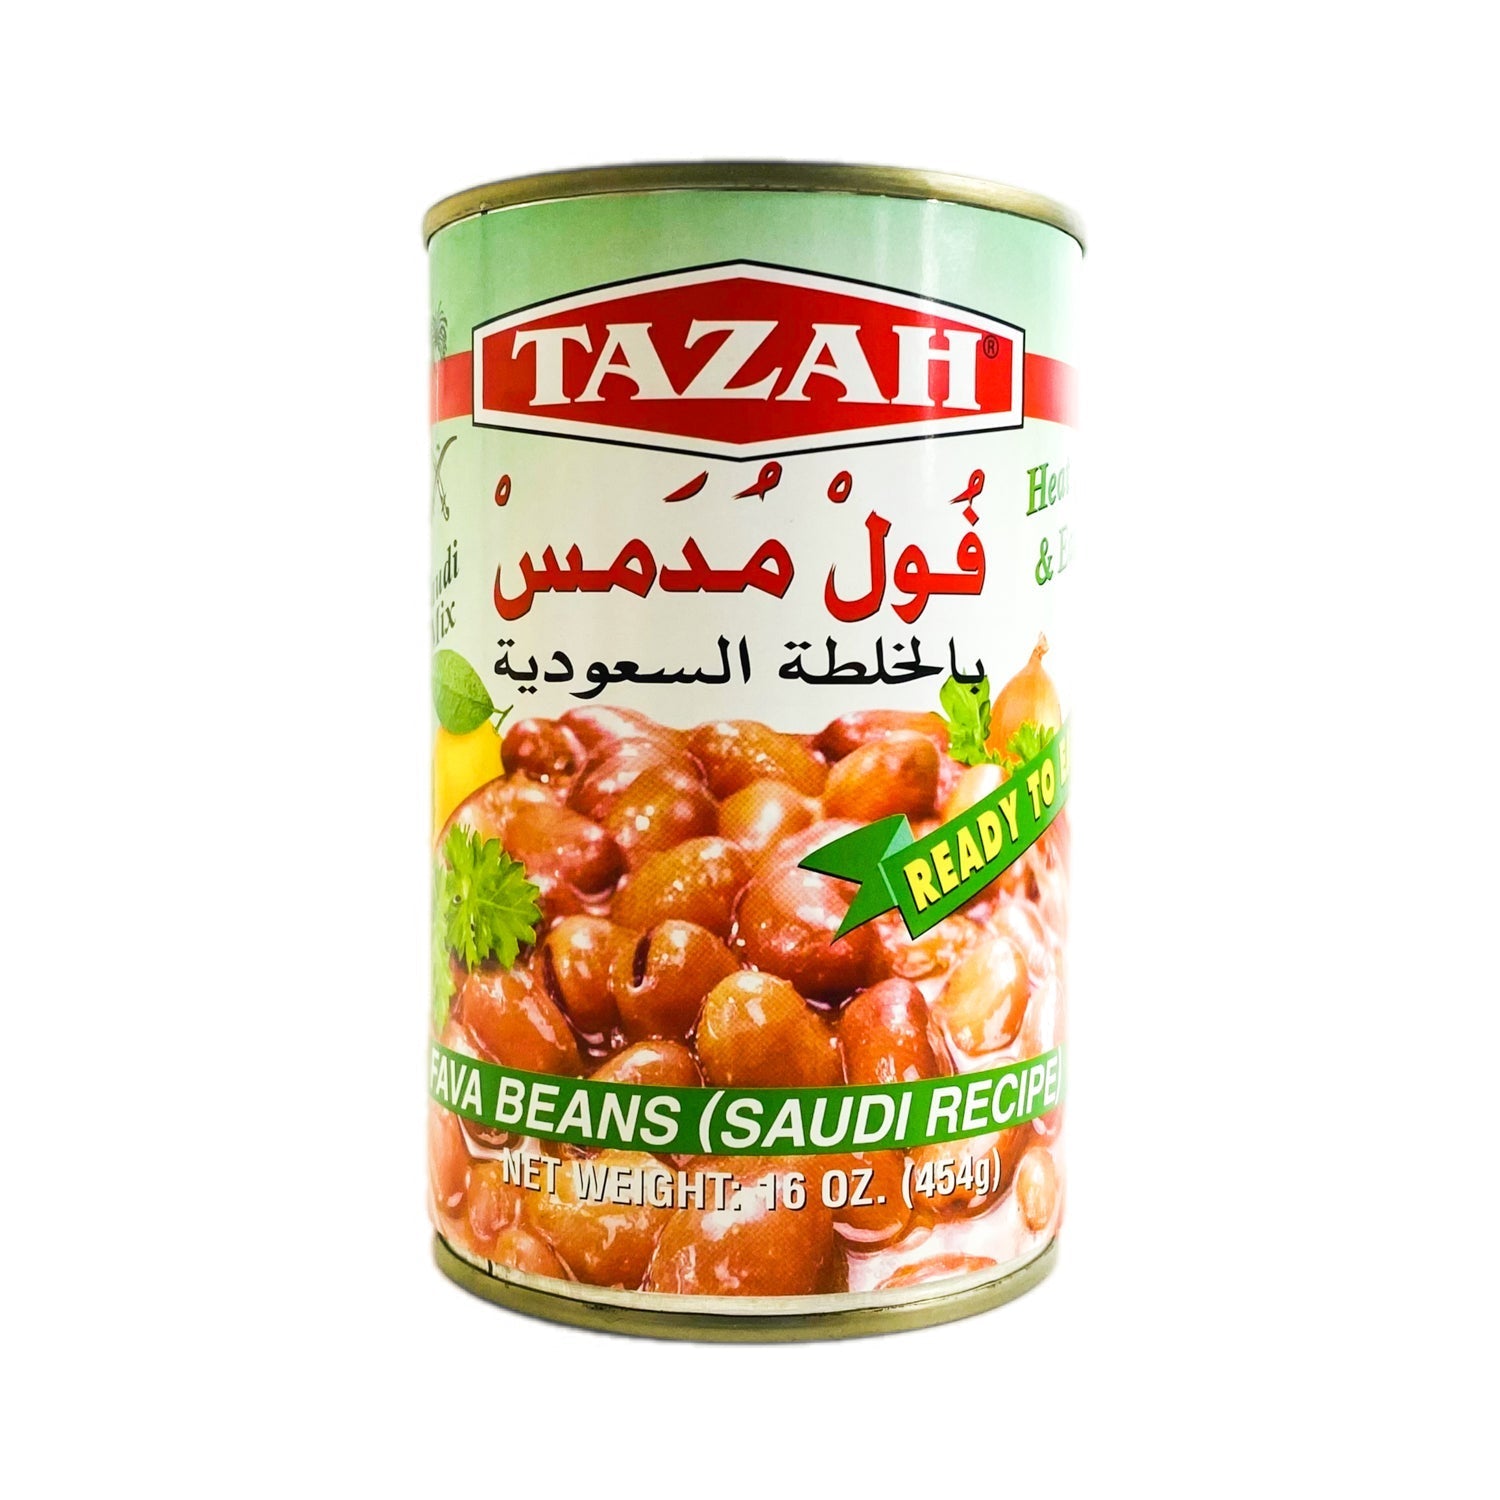 Tazah Fava Beans (Saudi Recipe)